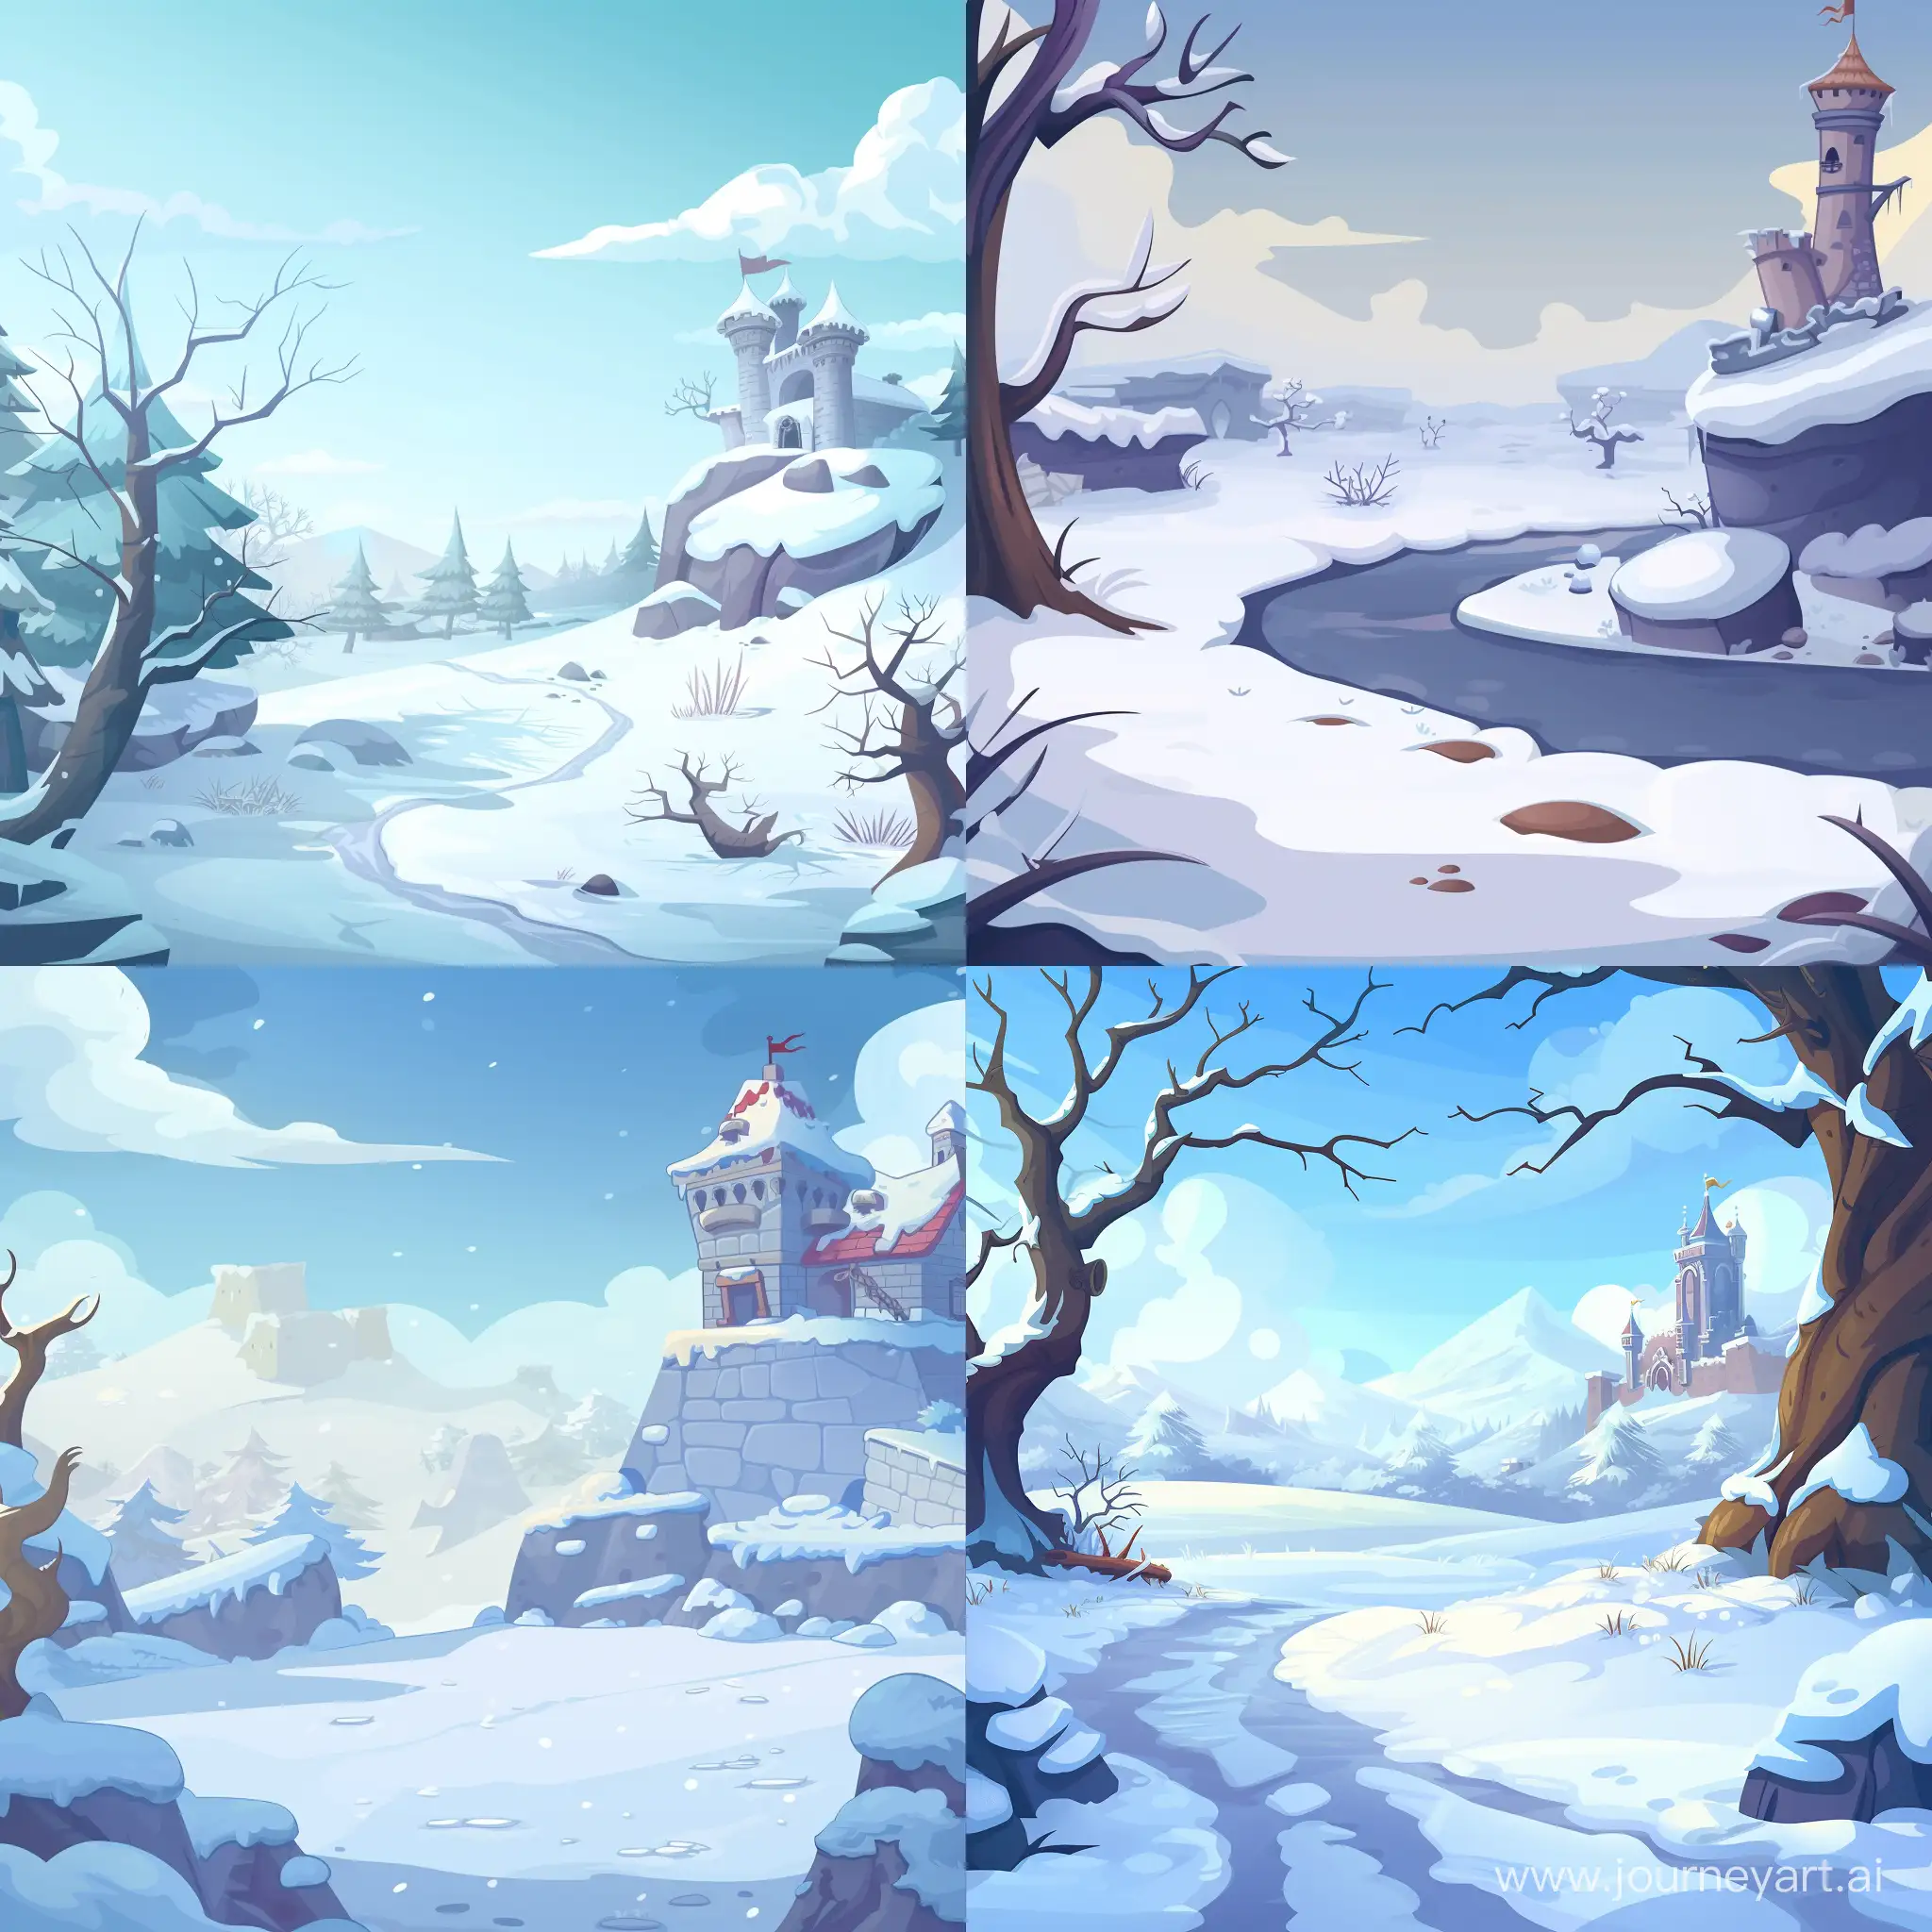 Нужно нарисовать задние фон для казуальной мобильный игры в мультяшном стиле, на заднике должна быть холодная зимняя локация, справа в углу должен виднеться небольшой замок
